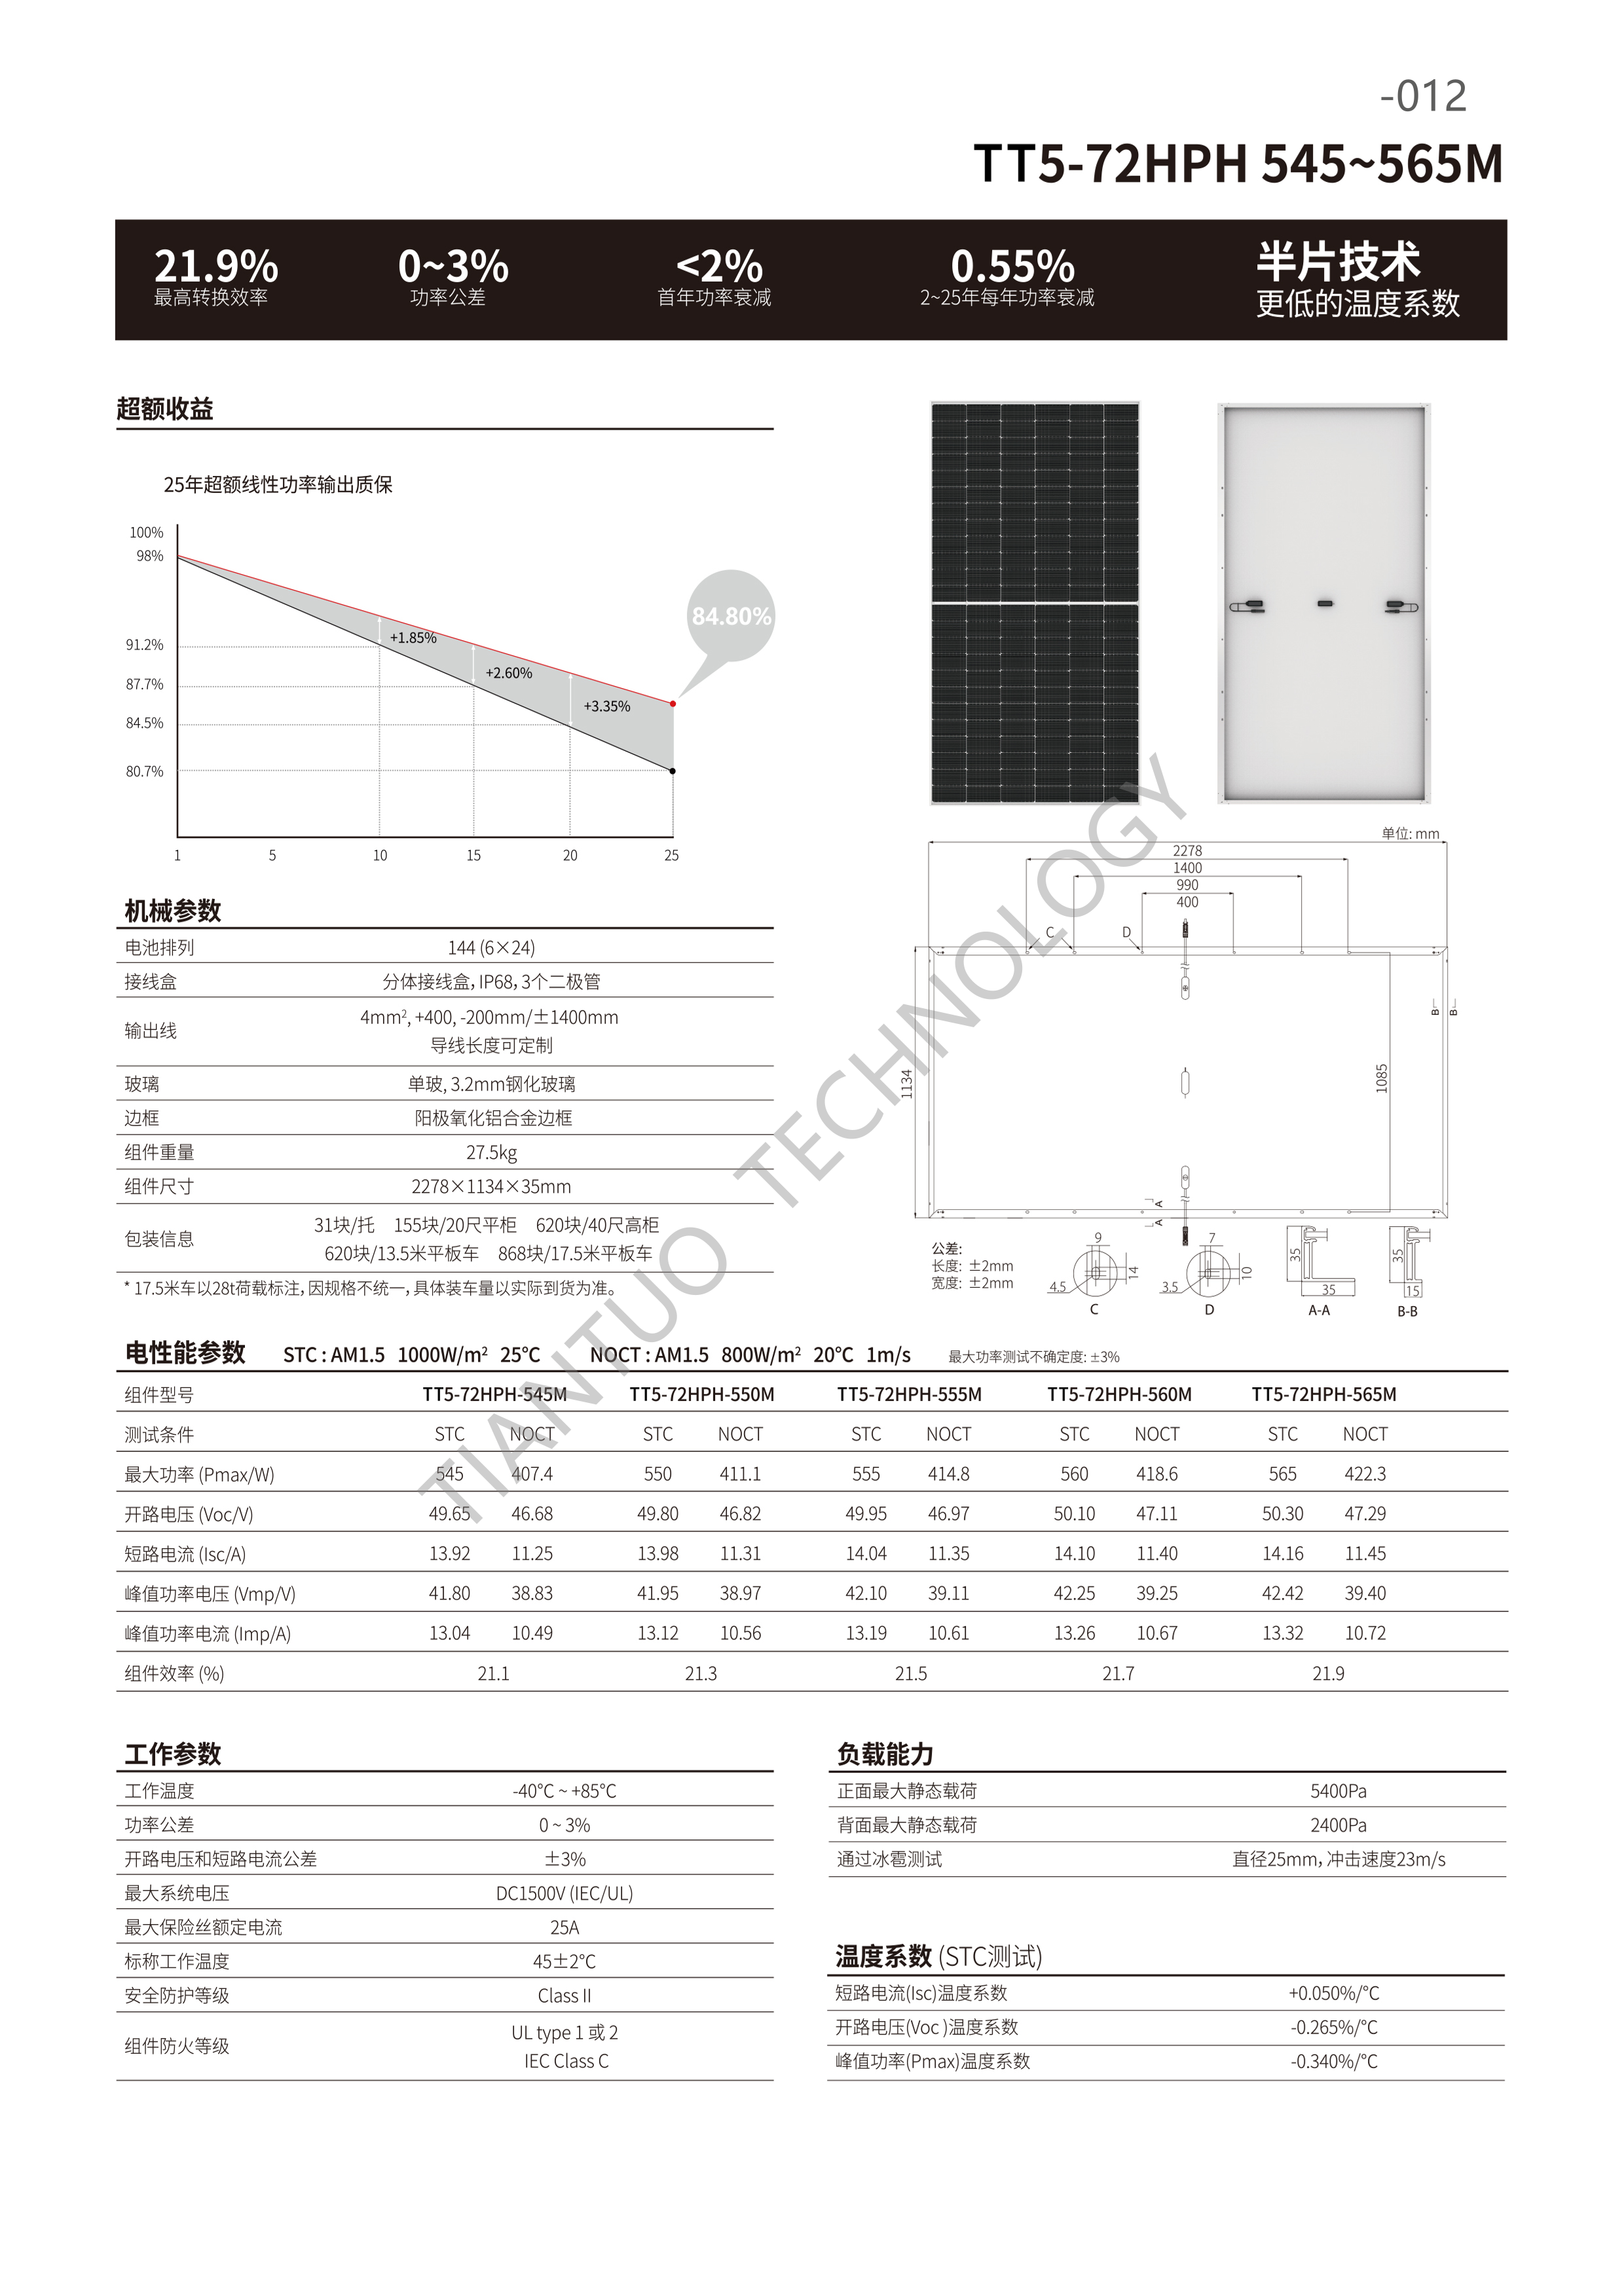 天托科技_BIPV分布式光伏发电技术手册5.0(水印版)_15.png